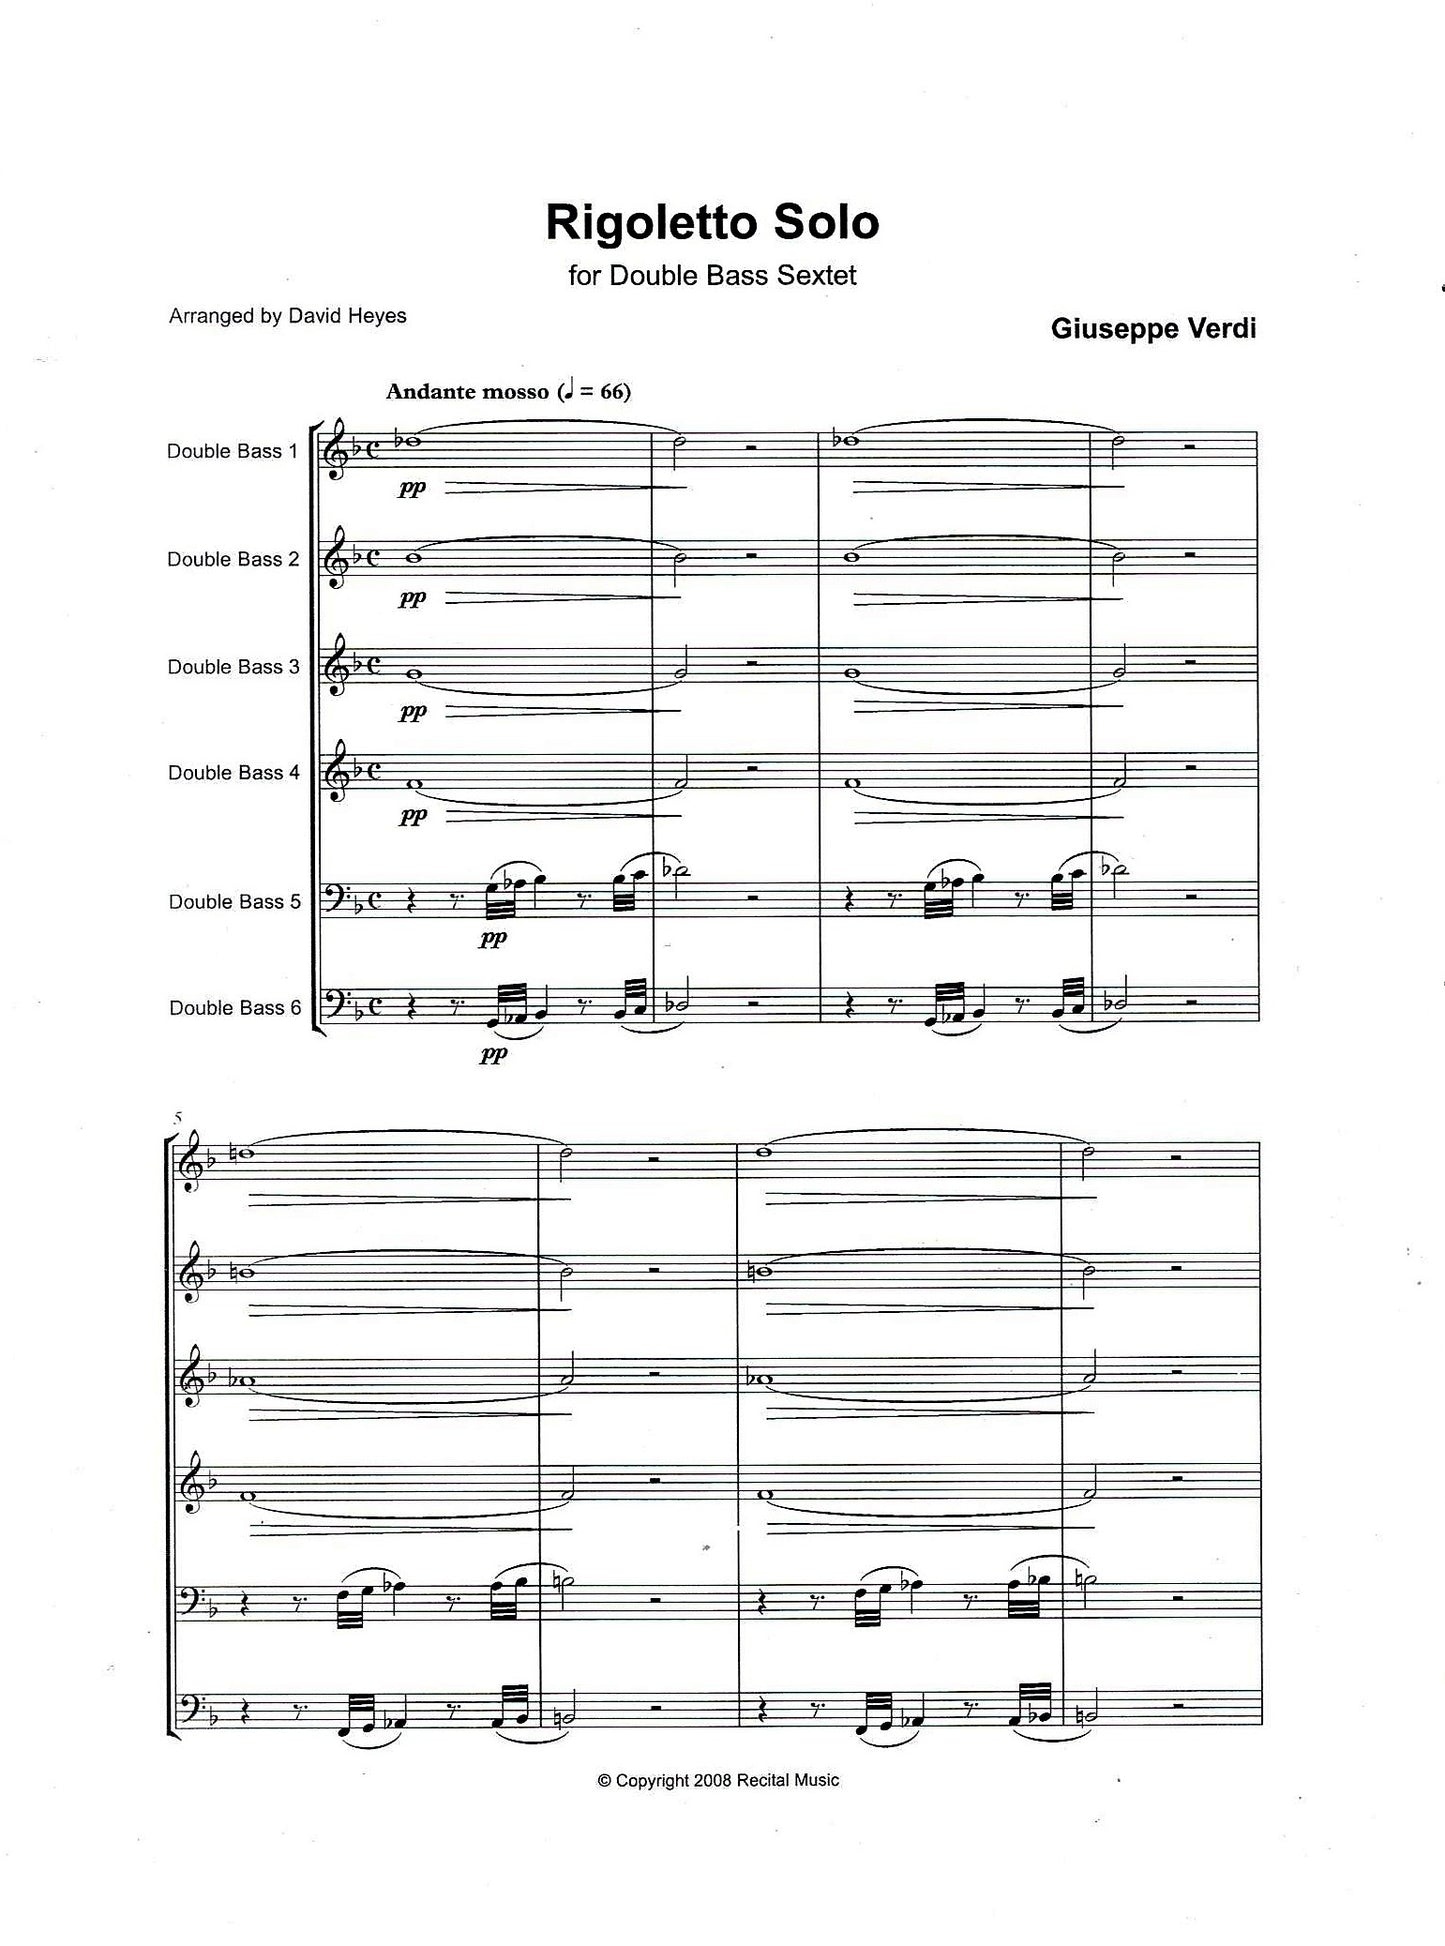 Bass Sextets Book 1 for double bass sextet (arr. David Heyes)